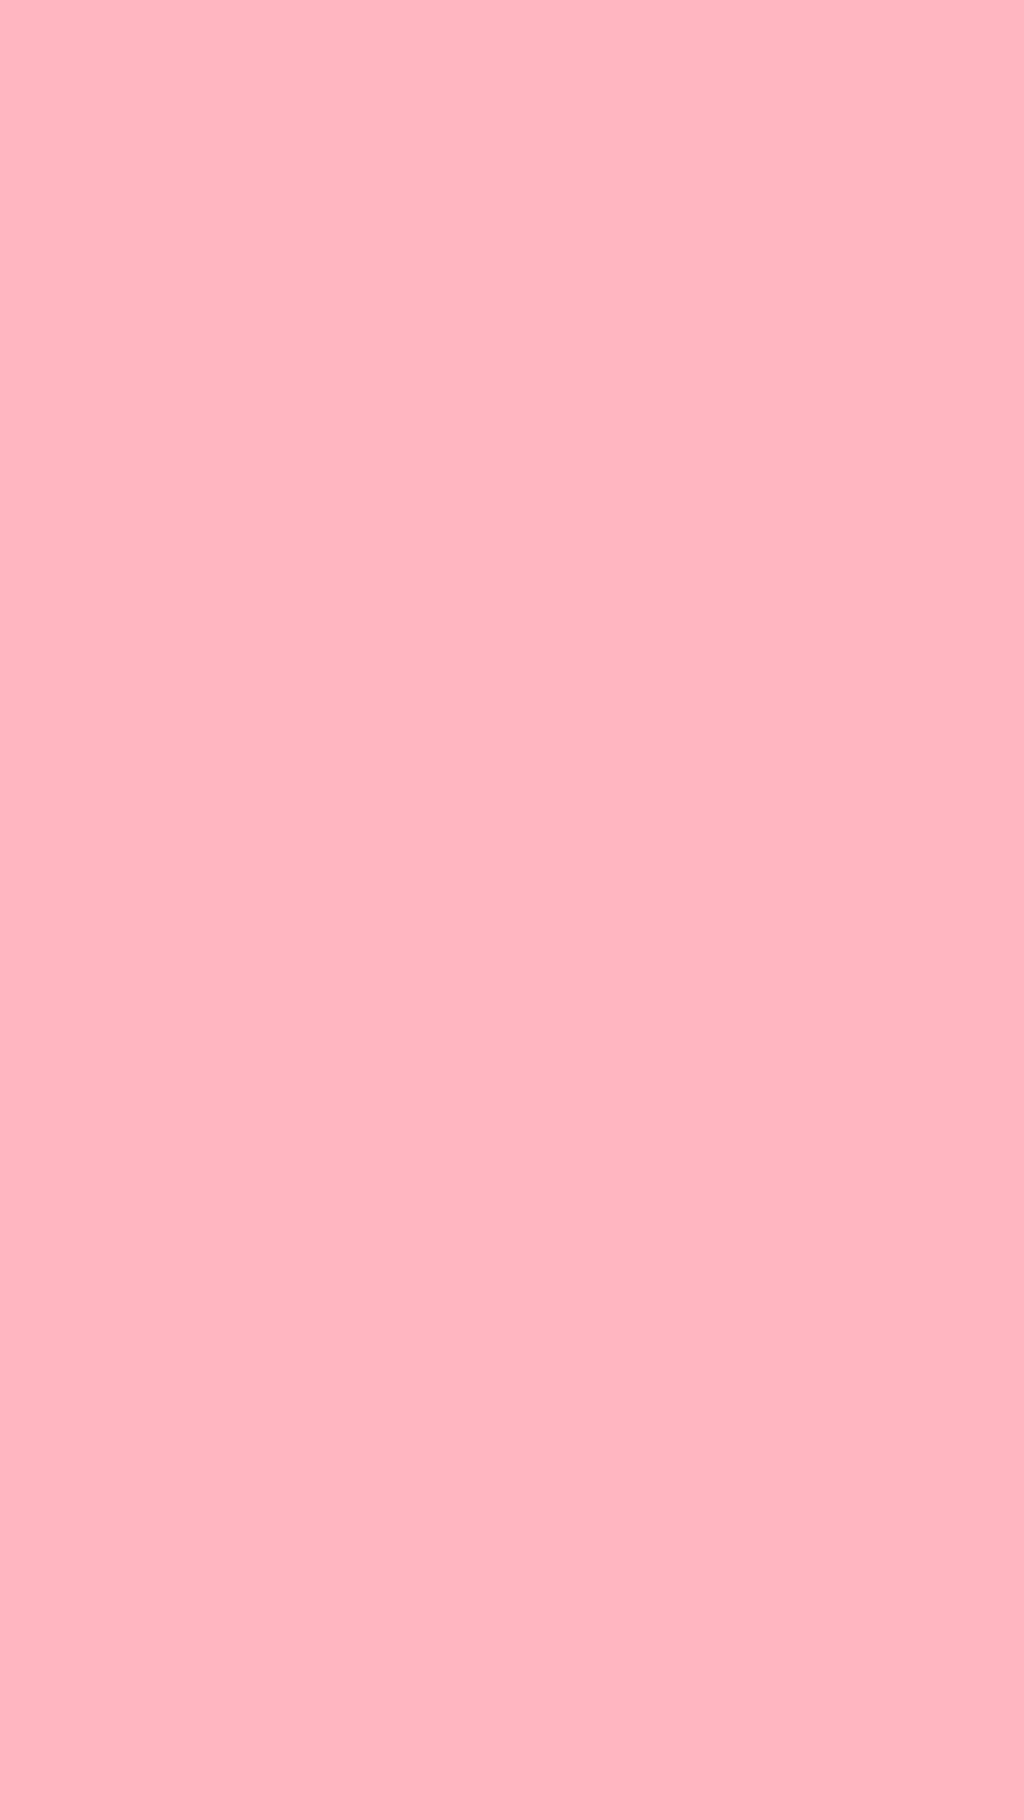 Hình nền màu hồng: Hình nền màu hồng sẽ khiến cho màn hình điện thoại của bạn thêm phần nữ tính và dịu dàng. Hãy xem hình ảnh và chọn cho mình một bức hình nền màu hồng yêu thích!